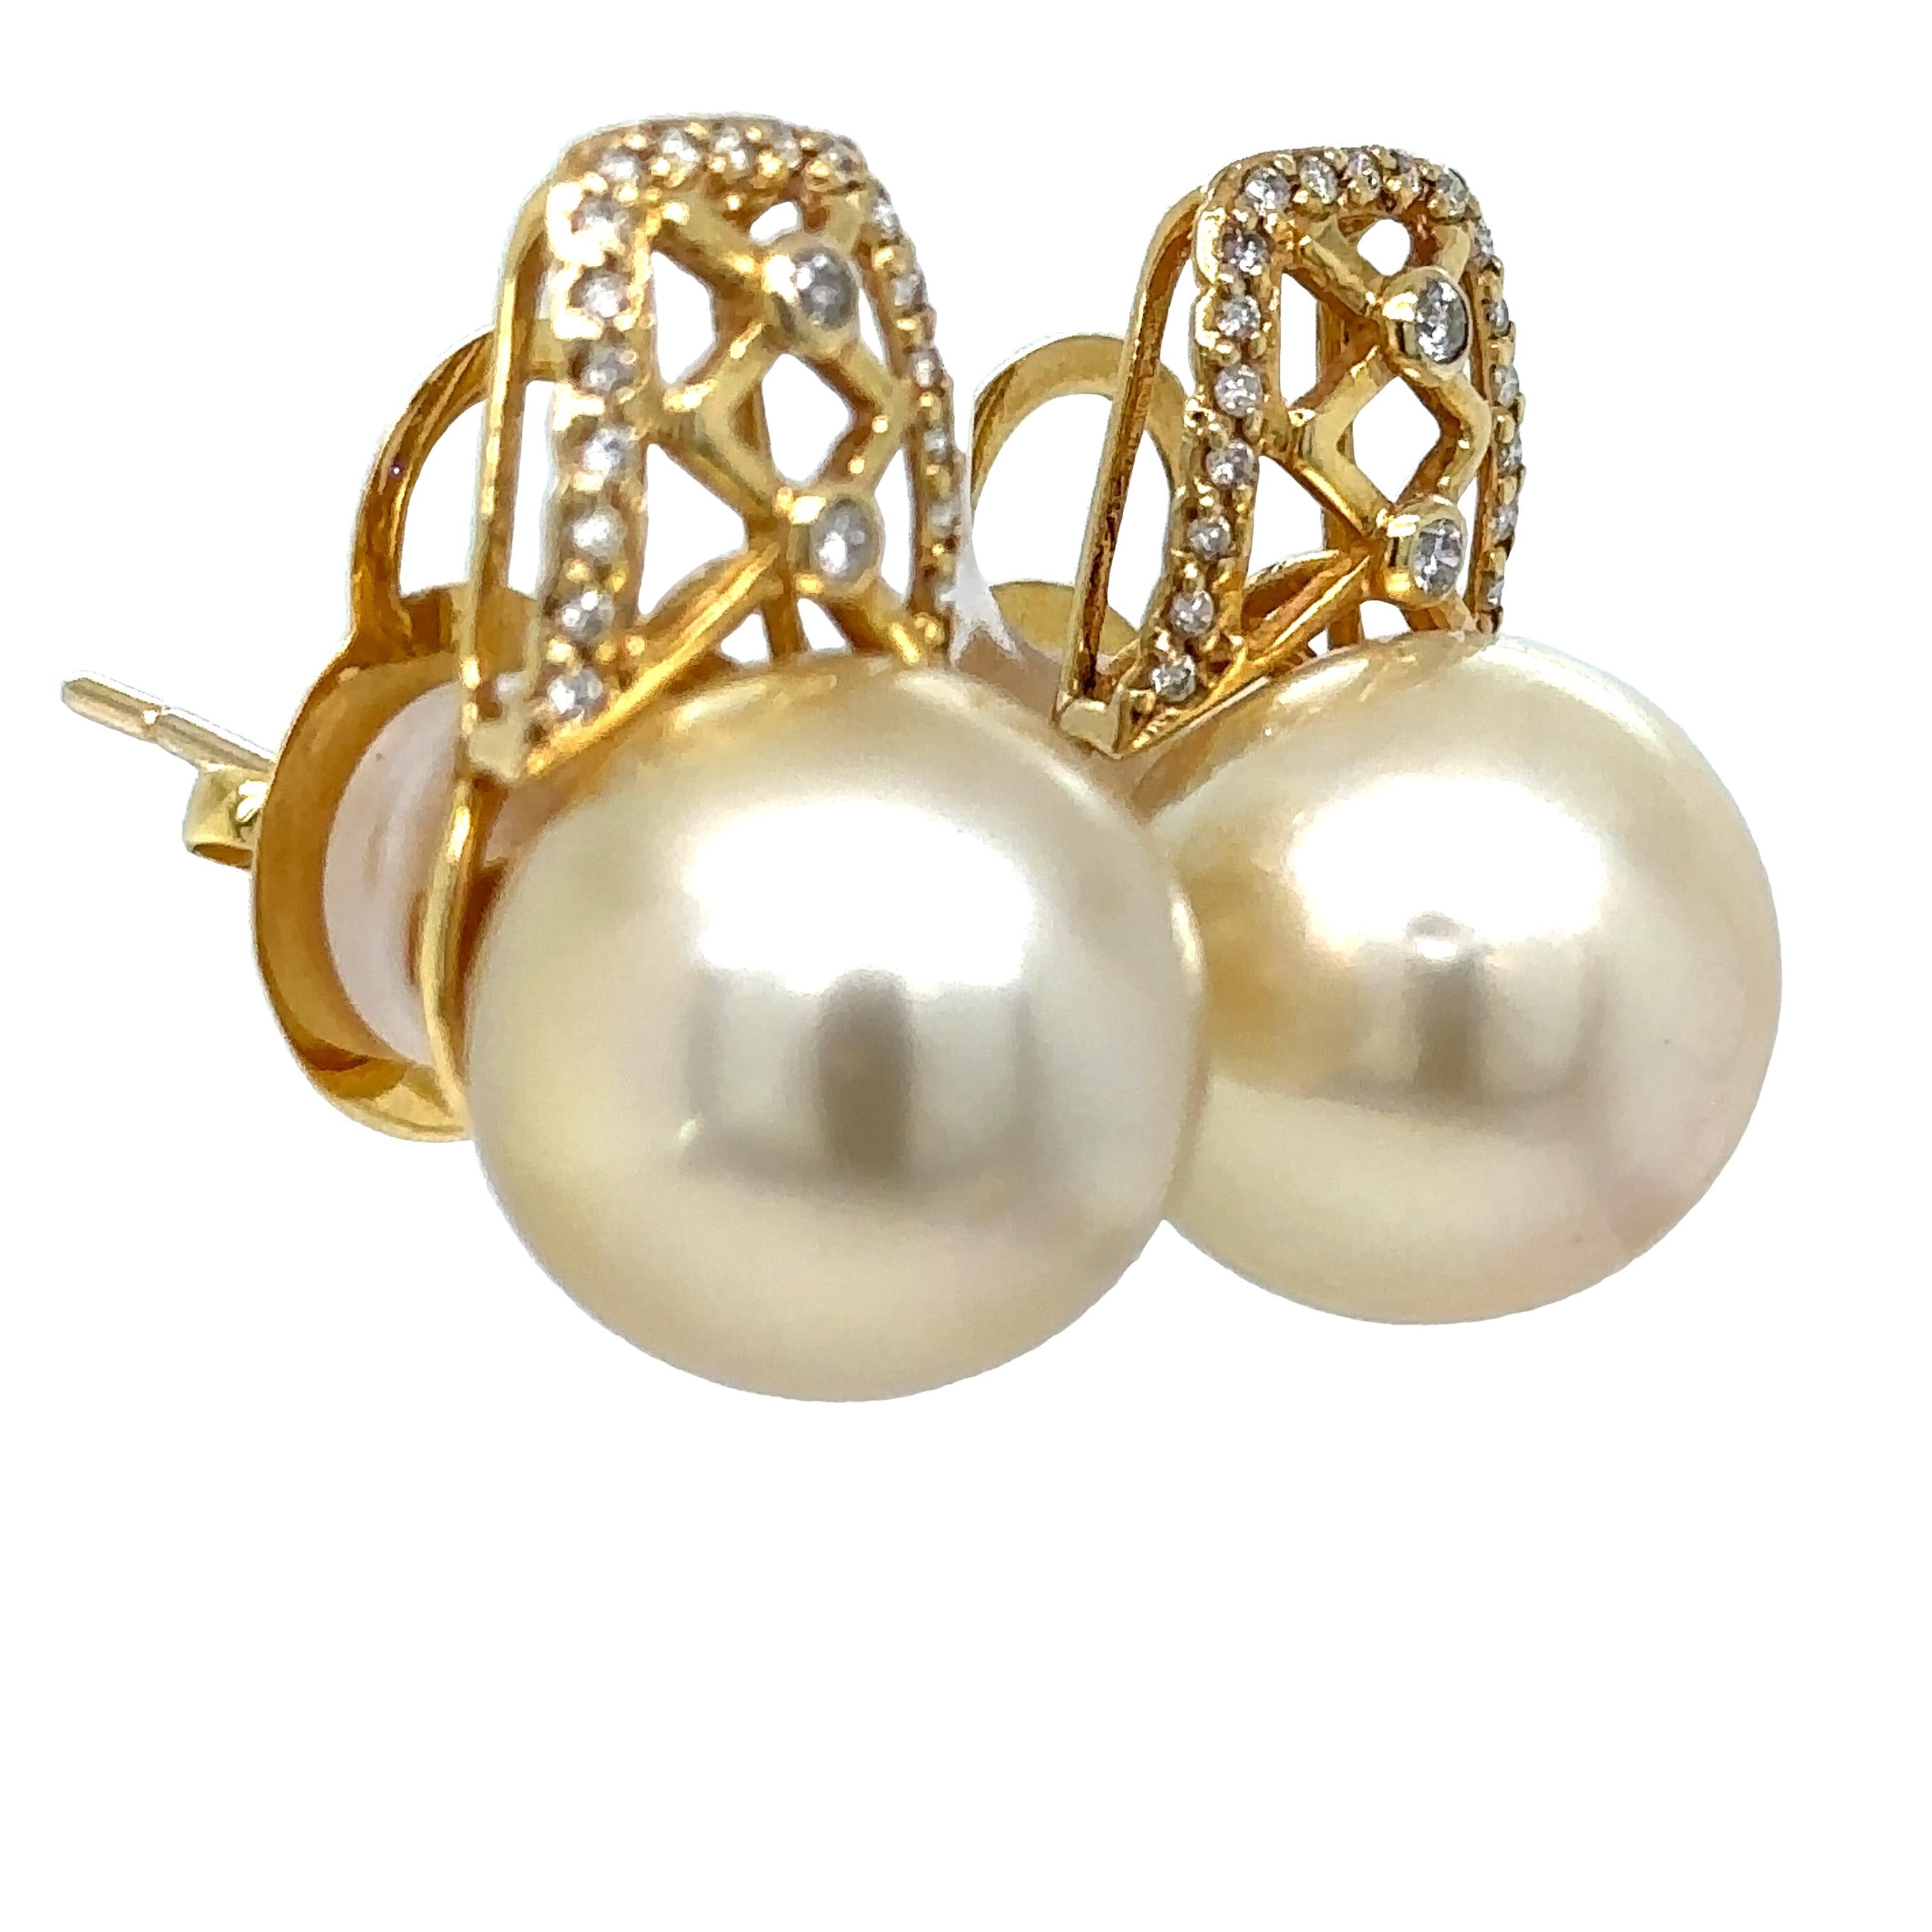 Ein Paar Perlen- und Diamant-Ohrstecker. Jeder Ohrring mit einer 14,5-15,0 mm großen S�üdsee-Zuchtperle und 21 runden Diamanten im Brillantschliff ist in 18 Karat Gelbgold gefasst.

Perlengröße: 14.6 - 15.0mm, Form: Halbrund, Farbe: Champagner,